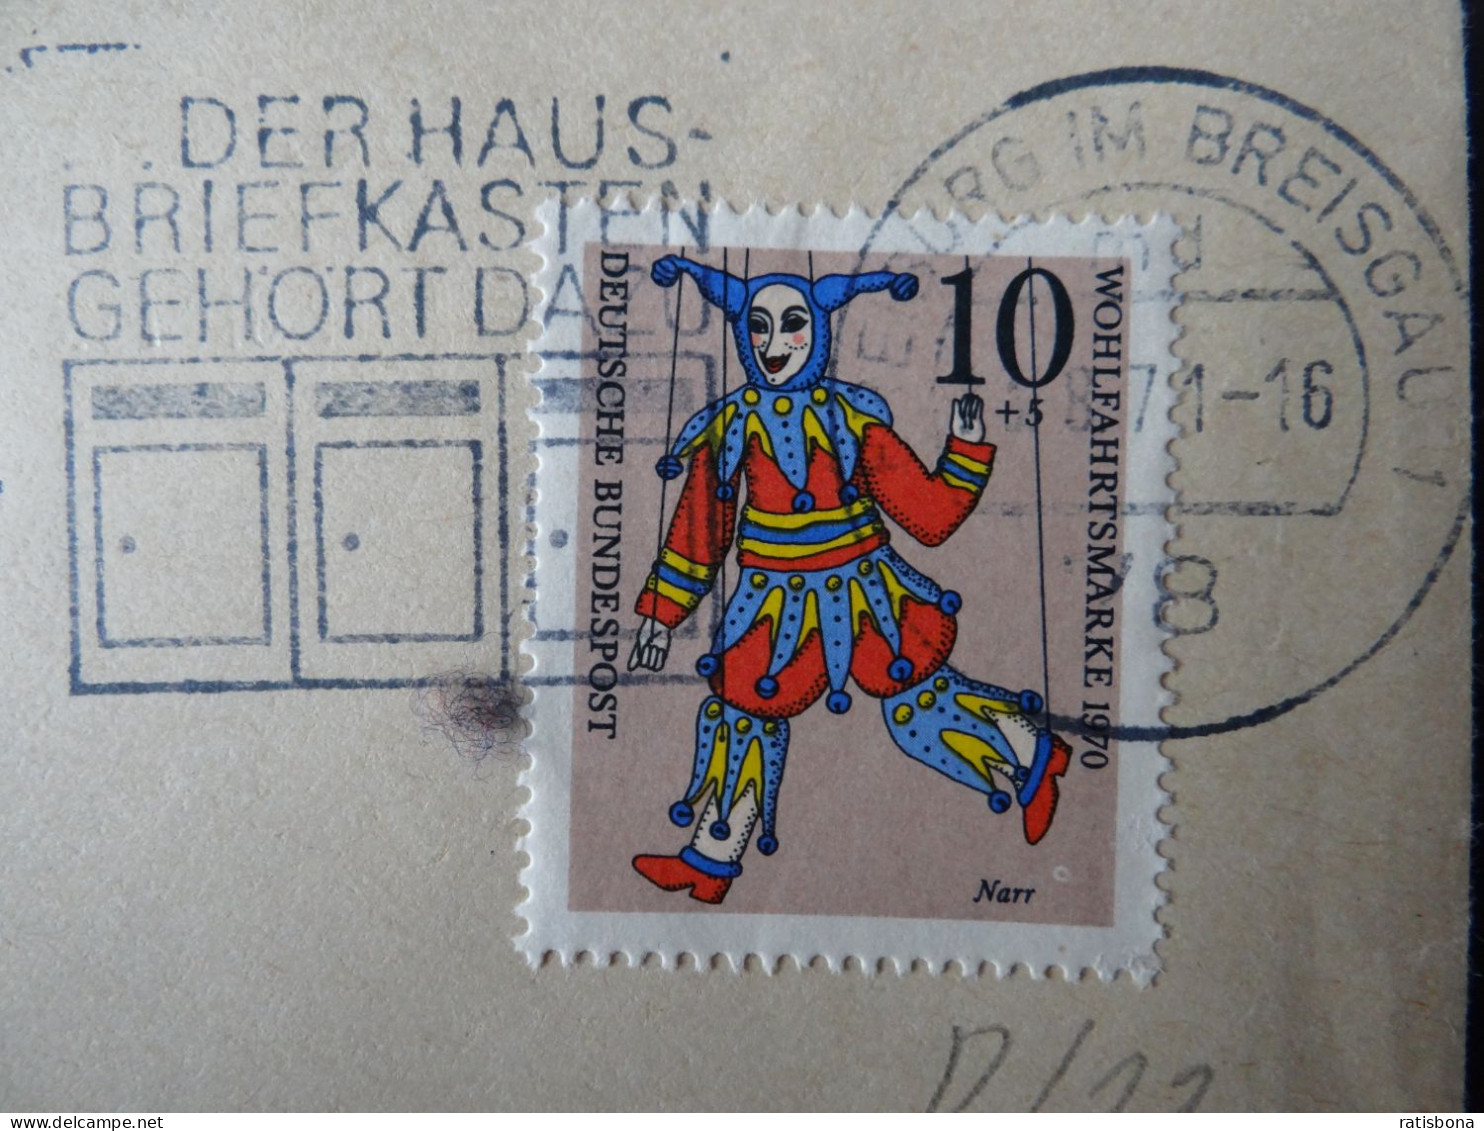 7800 Freiburg I.Breisgau - Der Hausbriefkasten Gehört Dazu - Werbestempel 1971 - Maschinenstempel (EMA)